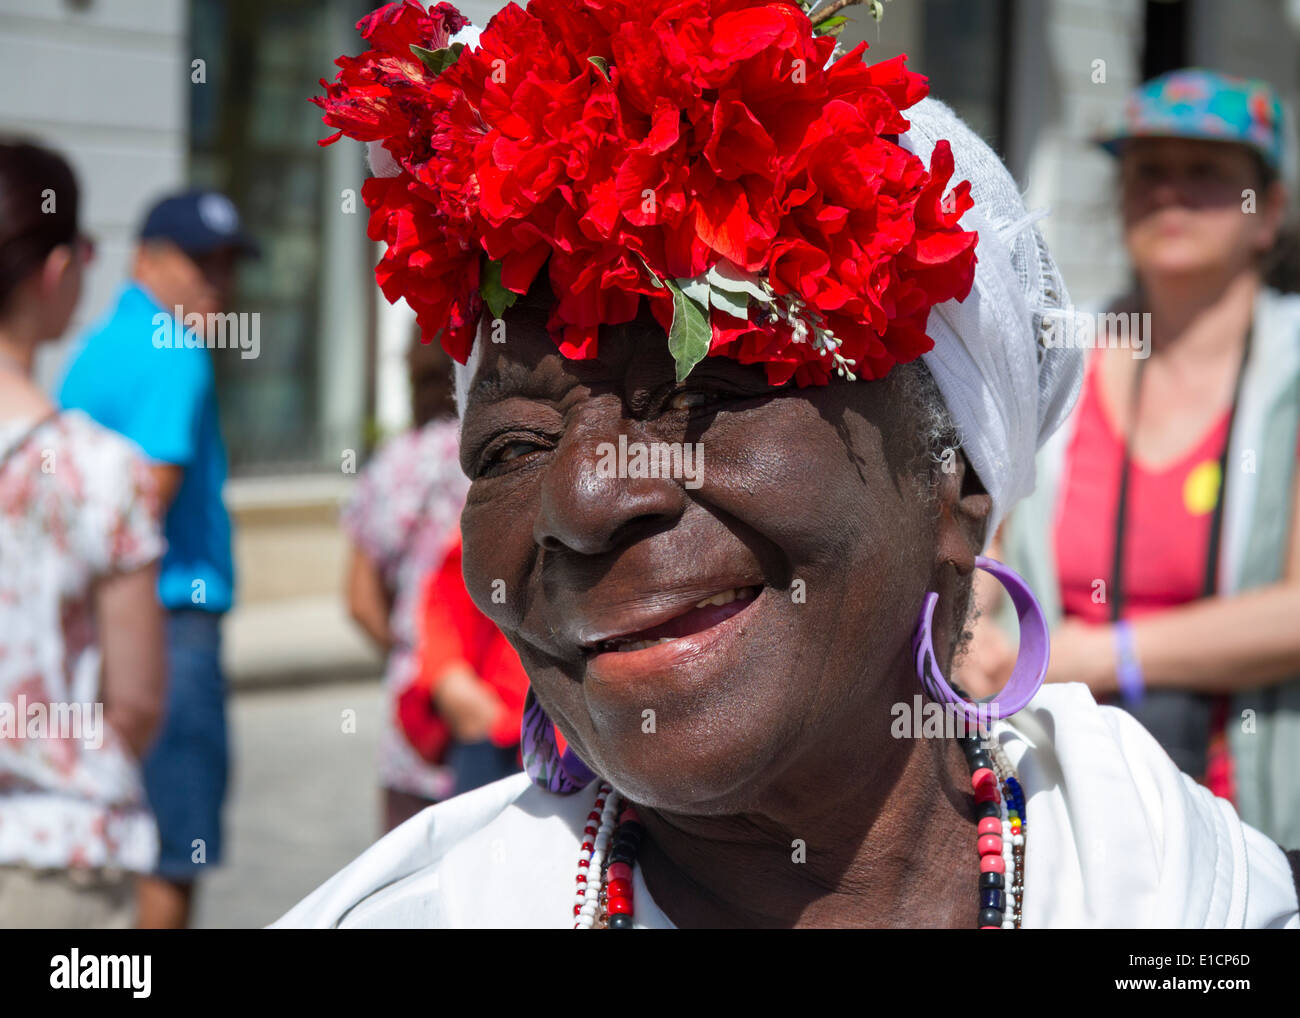 Ritratto di viaggio, felice donna cubana locale posa con cappello rosso fiore, sorridente, la Habana Vieja, l'Avana Vecchia, Cuba Foto Stock